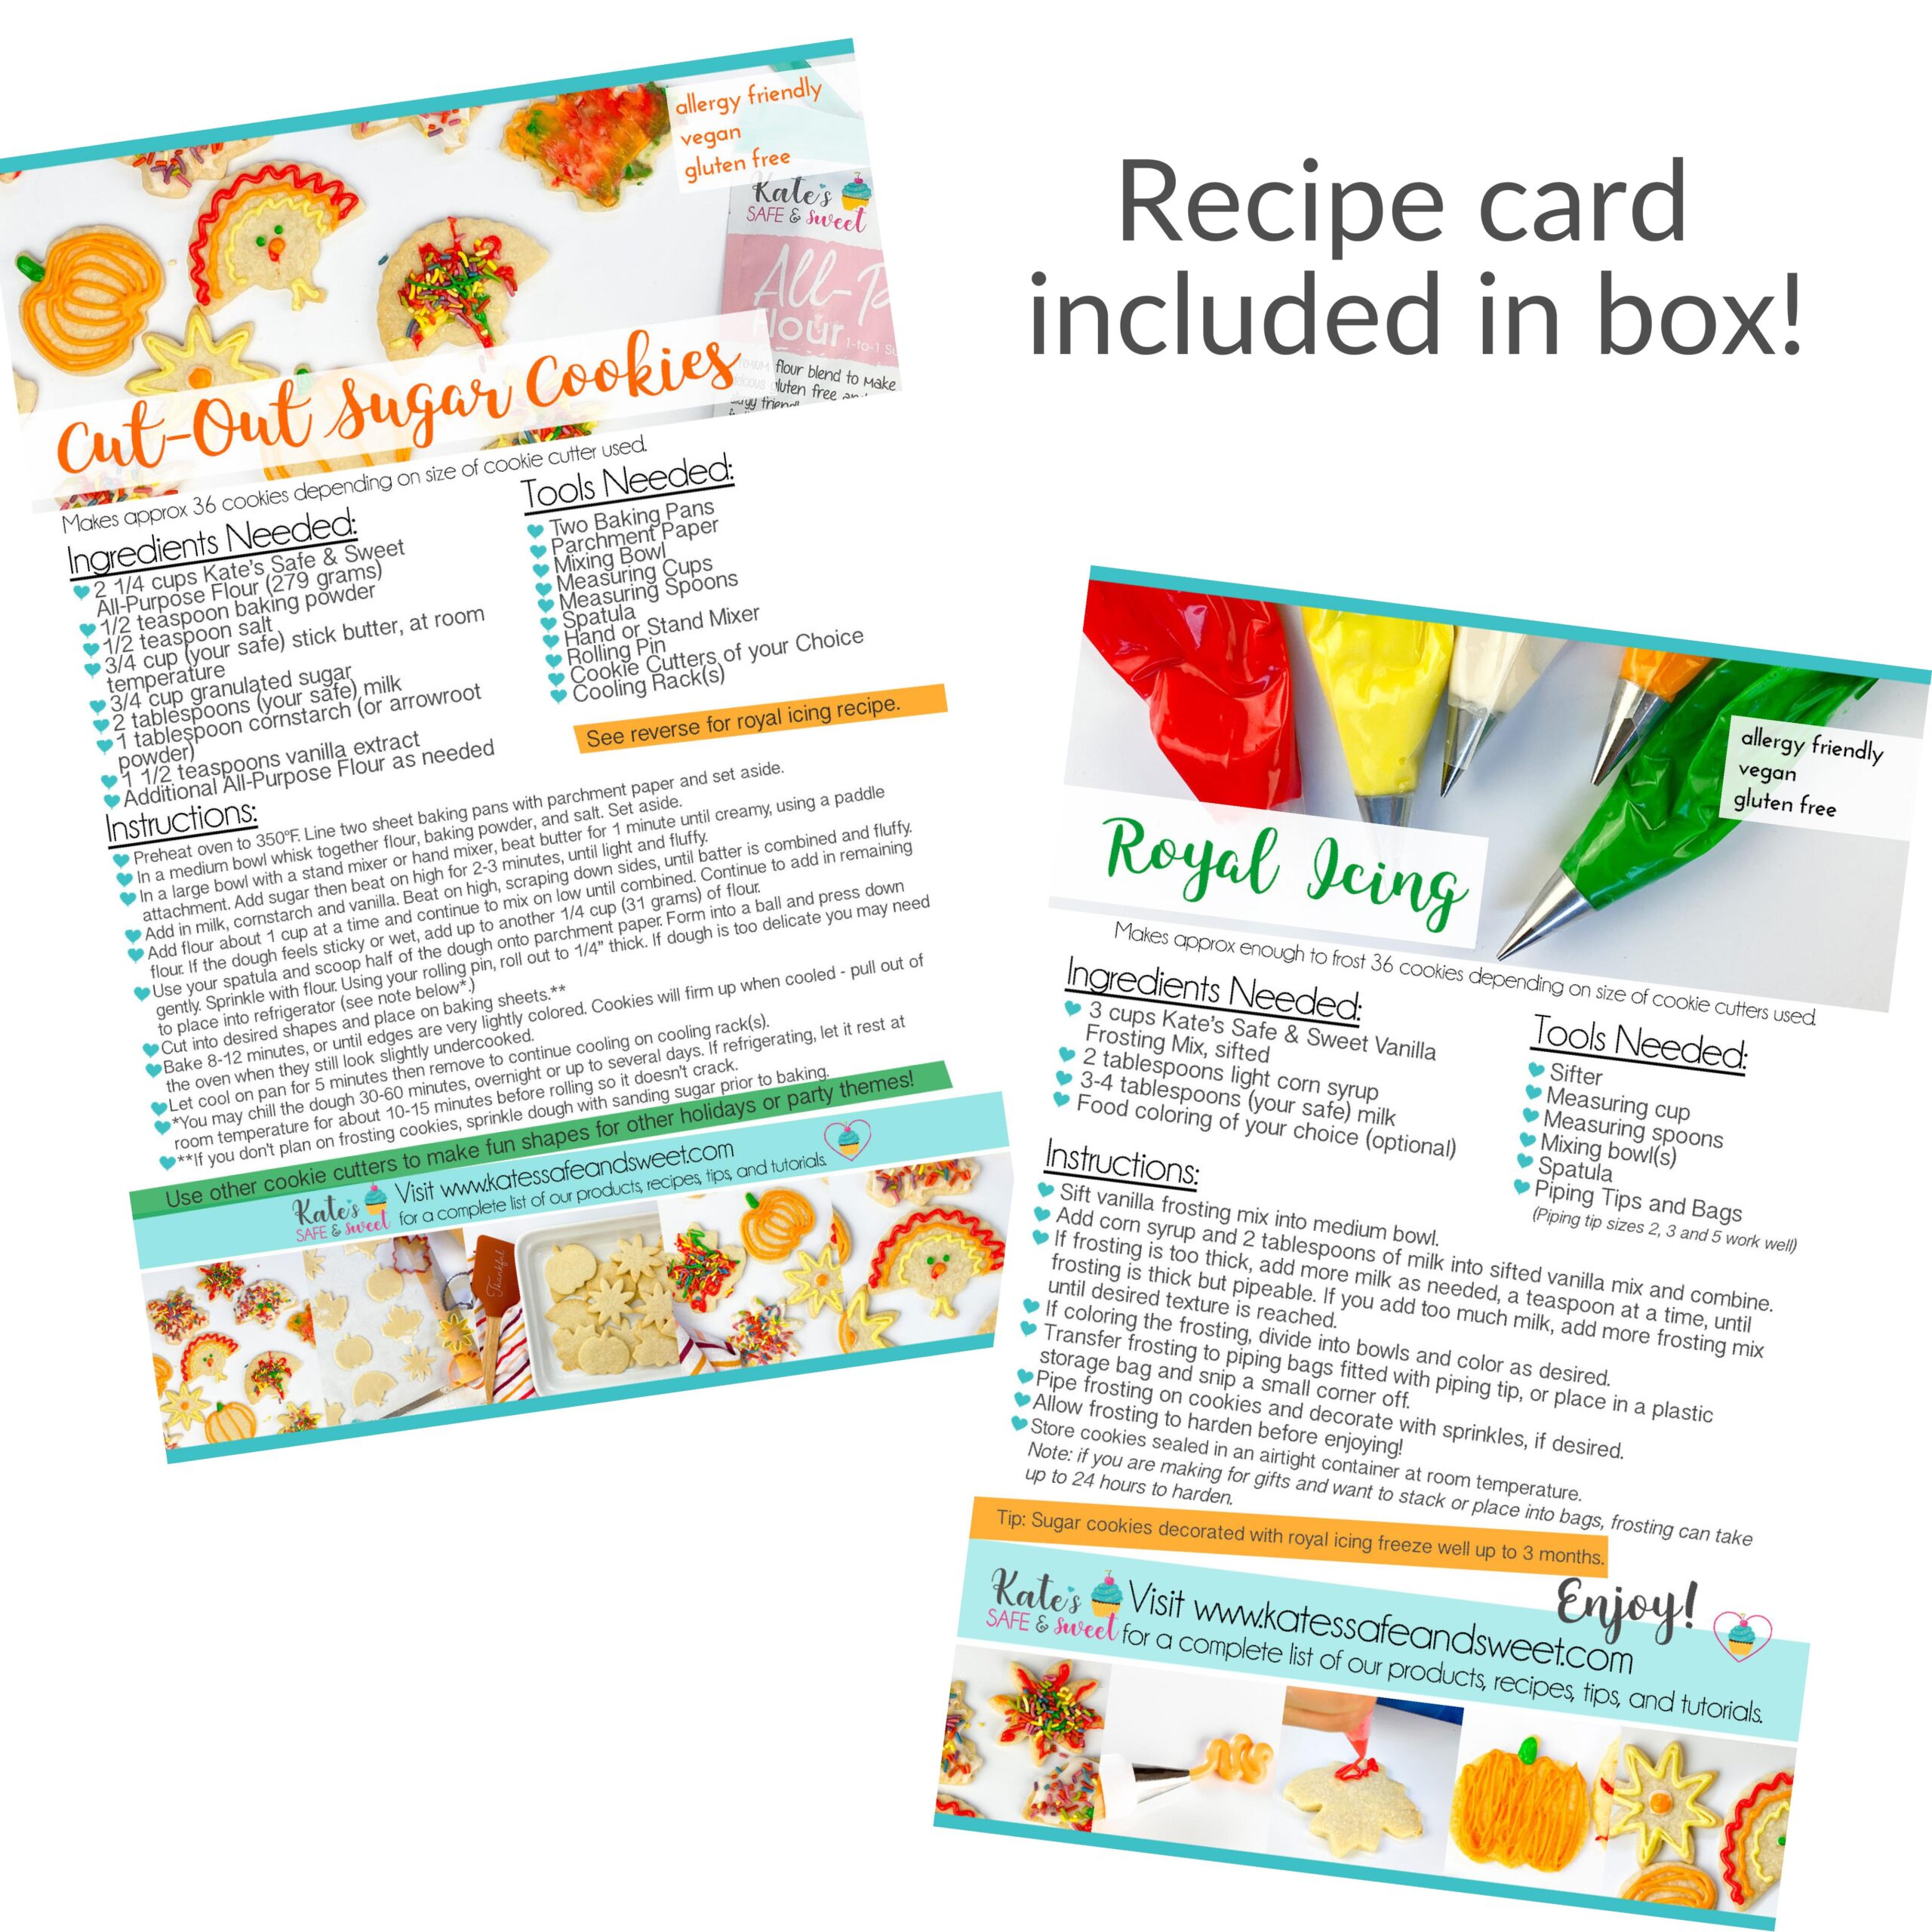 Kate's Safe & Sweet - Thanksgiving Sugar Cookie Baking Box Recipe Card